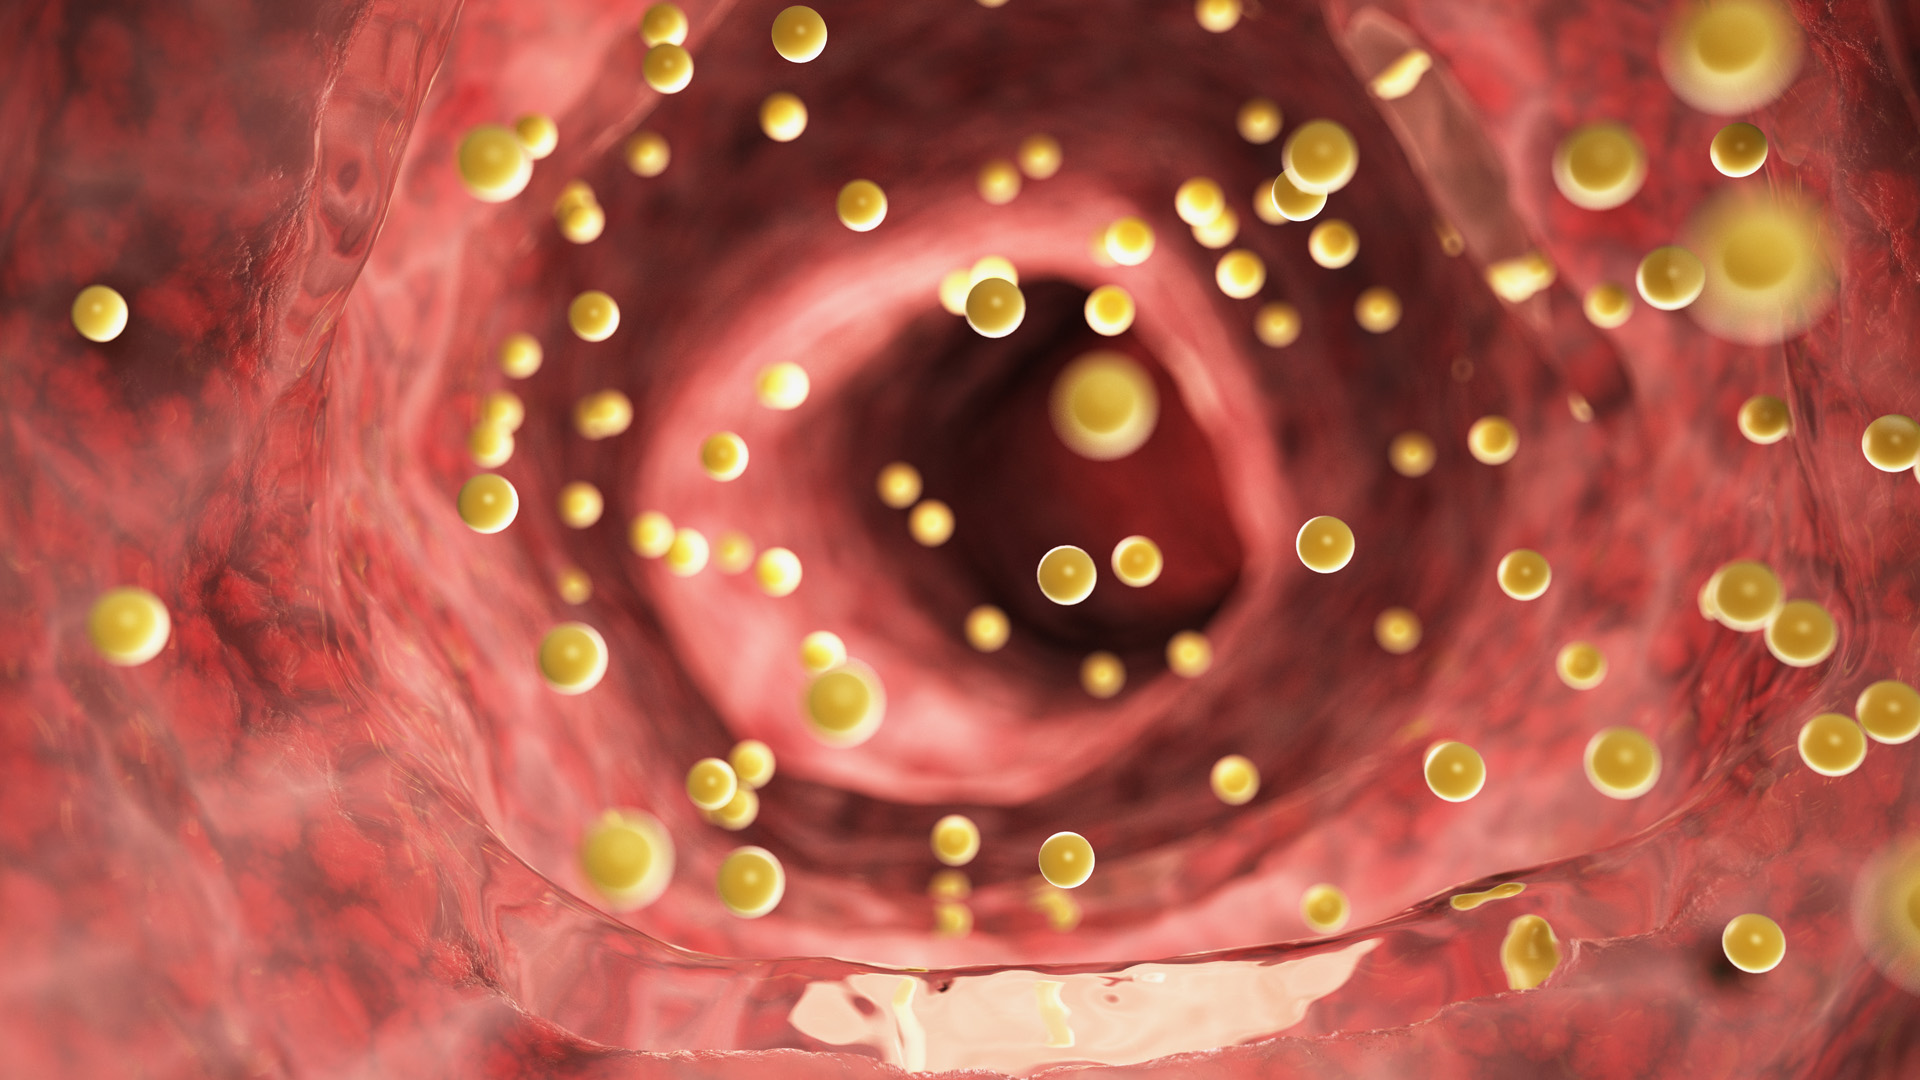 Las grasas dentro del torrente sanguíneo (Shutterstock)